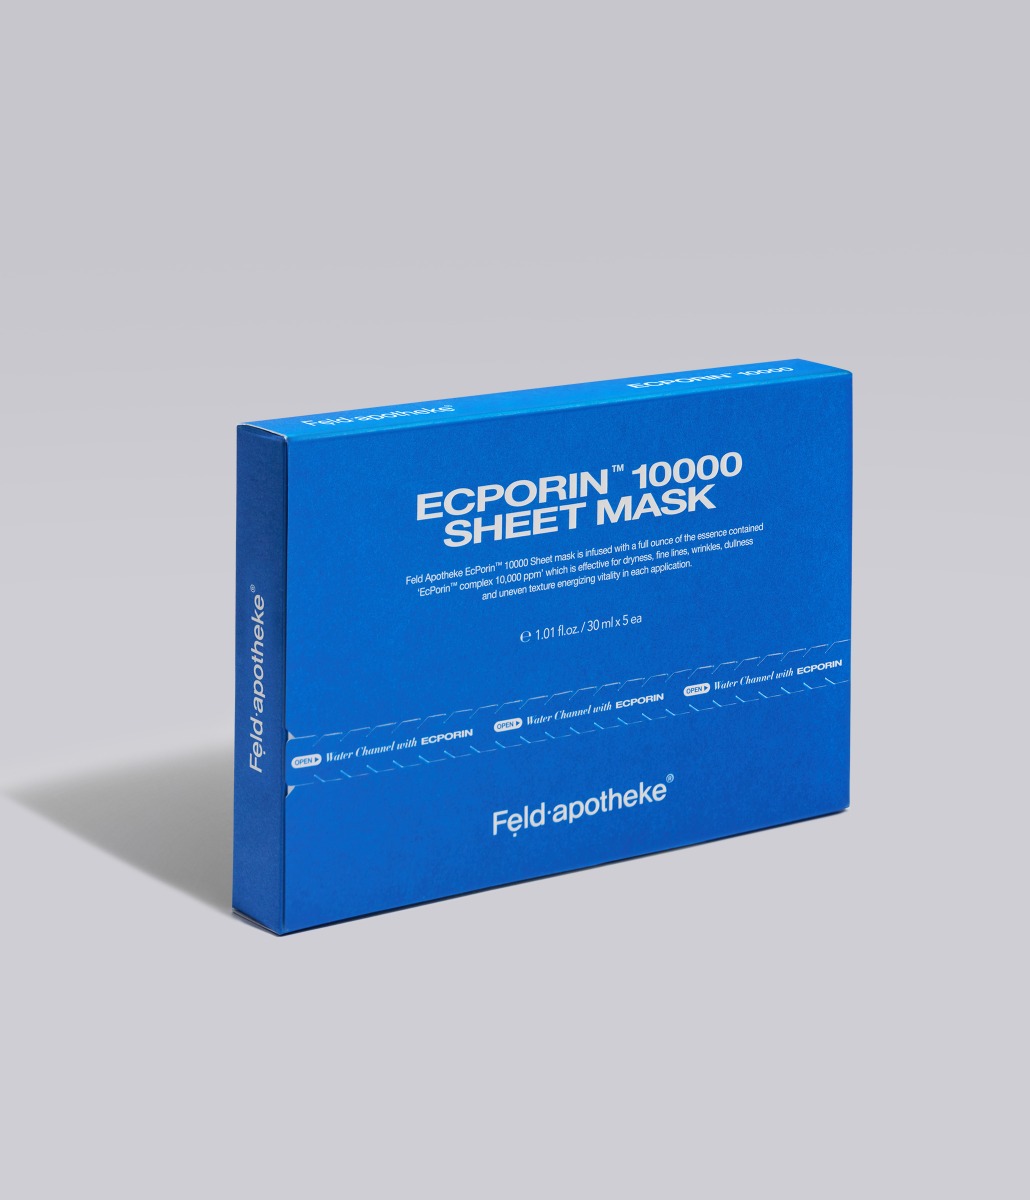 엑포린 10000 시트 마스크 1BOX (5매)